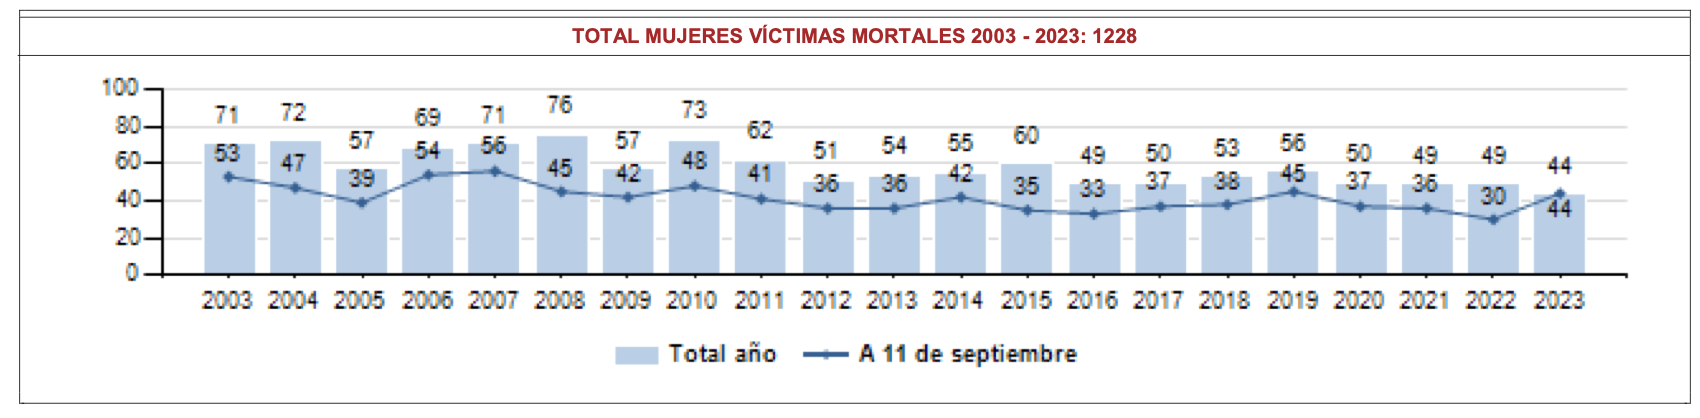 Evolución del número de mujeres víctimas mortales por violencia de género en España. Años 2003 a 2023